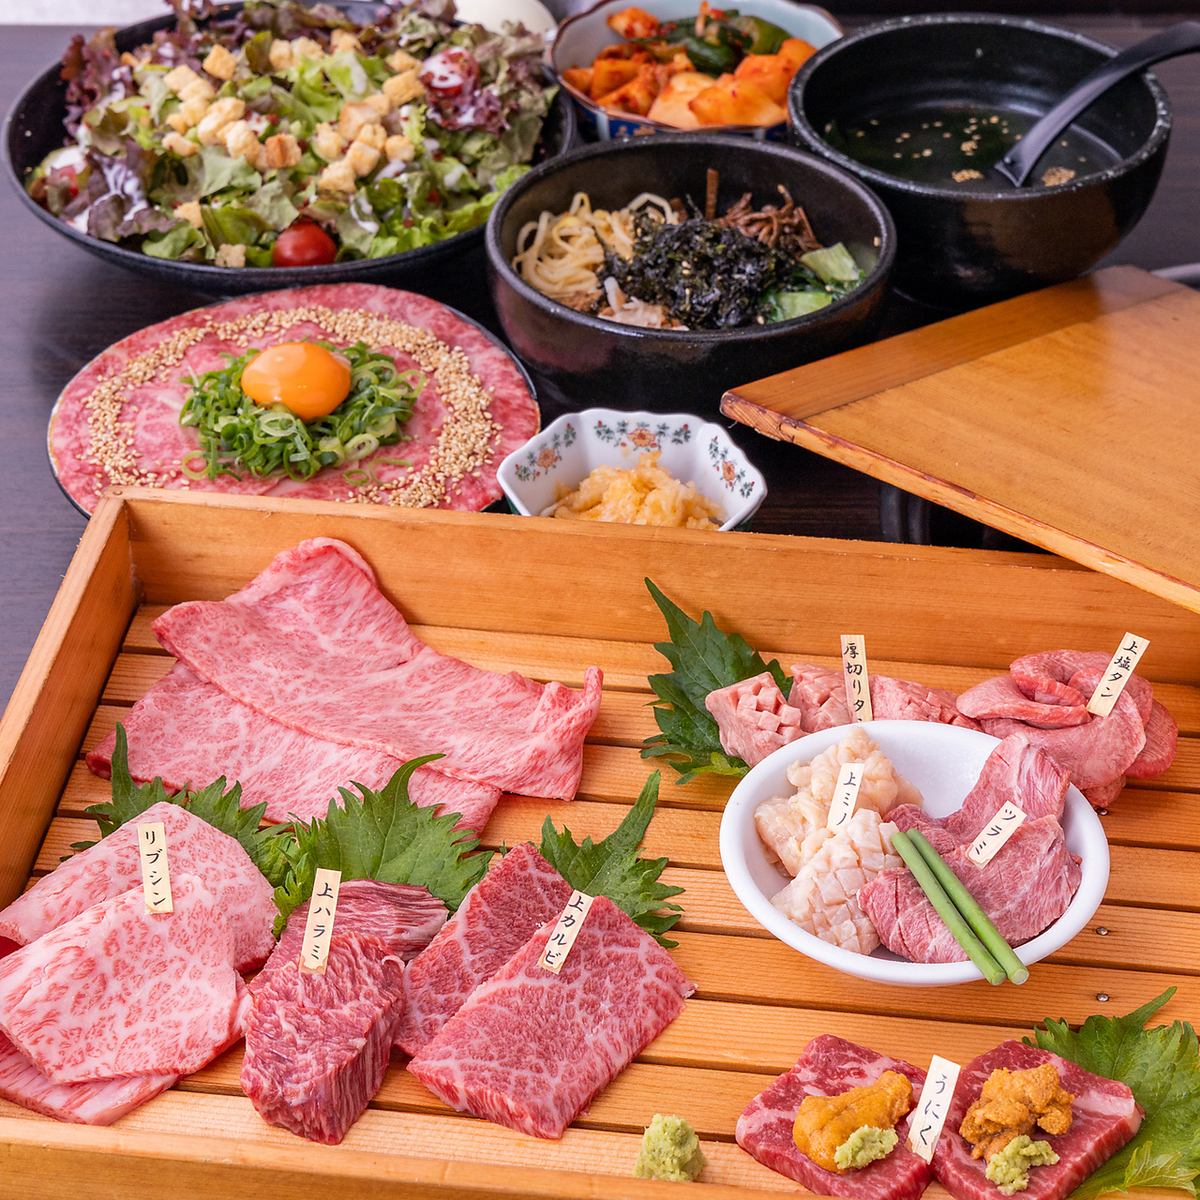 用煙熏烹飪......“開放和驚喜玉手箱套餐”6000日元